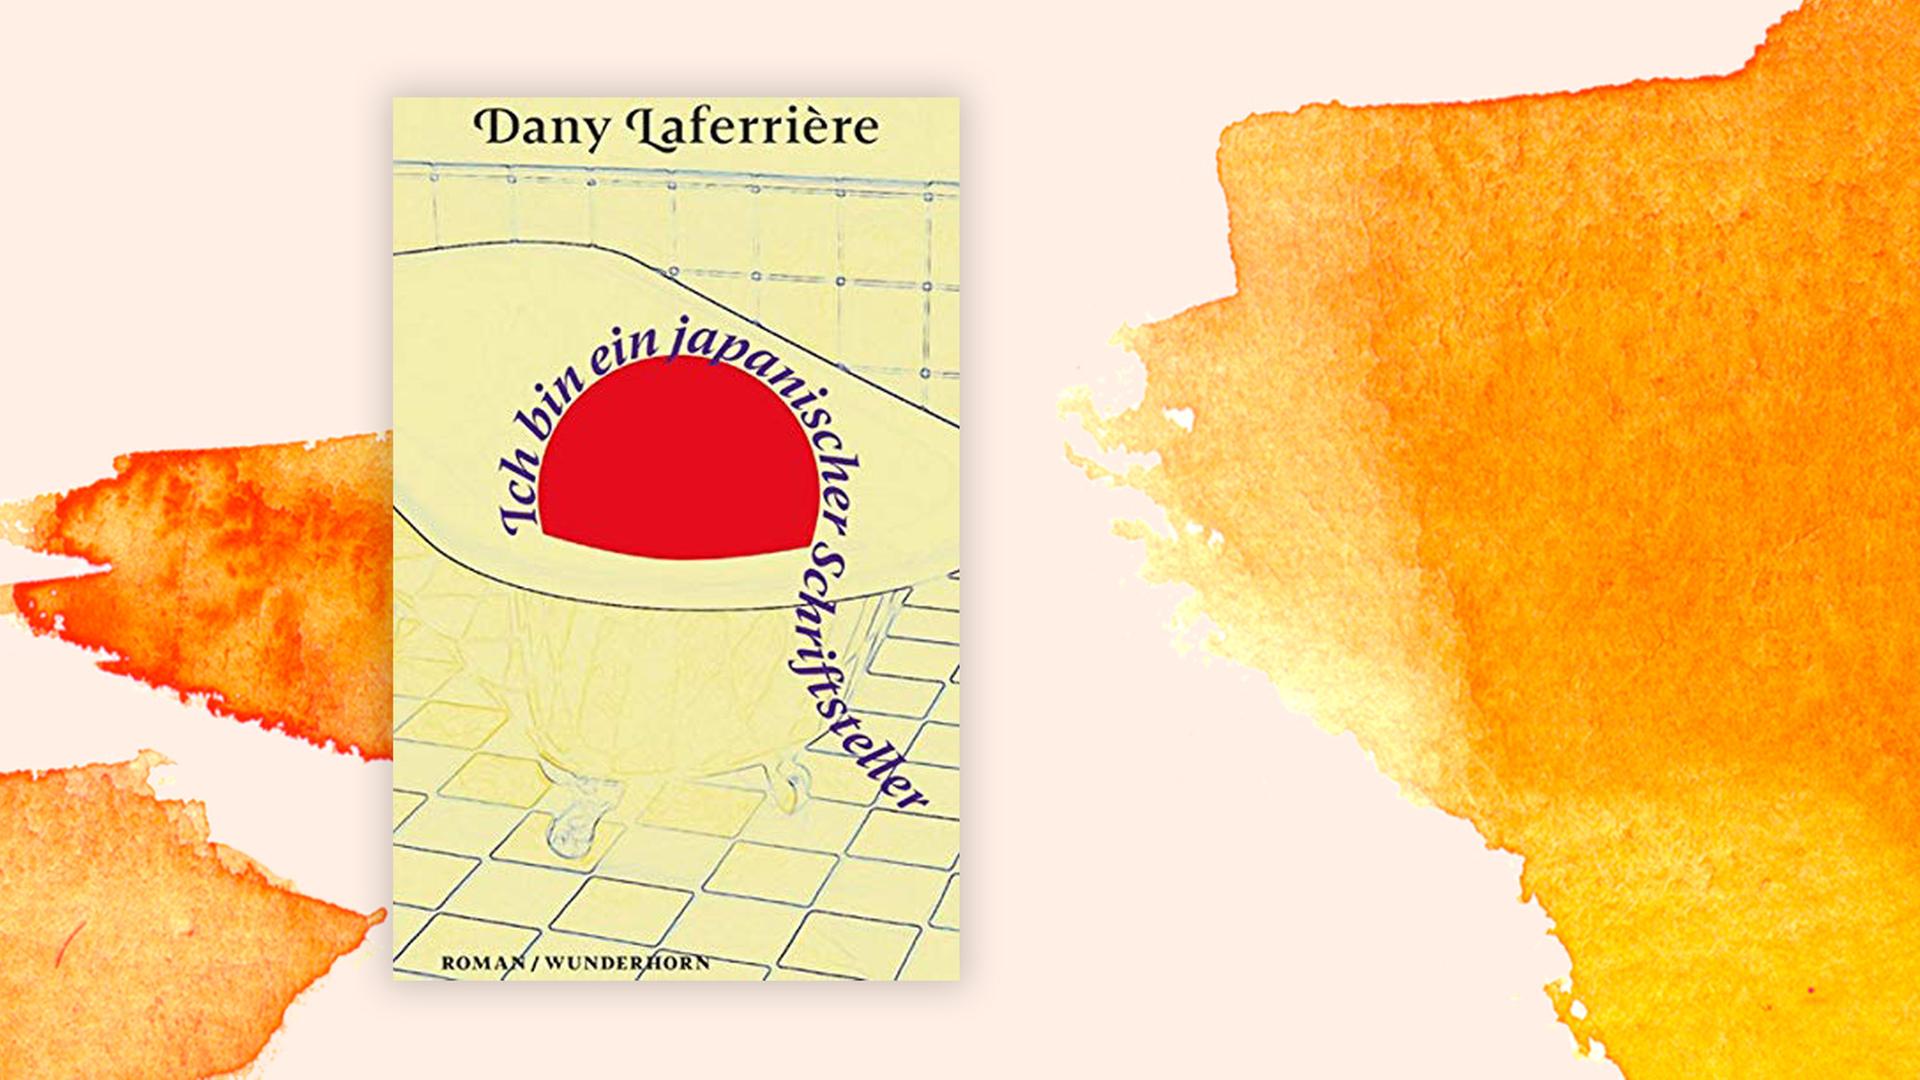 Buchcover zu Dany Laferrière: "Ich bin ein japanischer Schriftsteller"